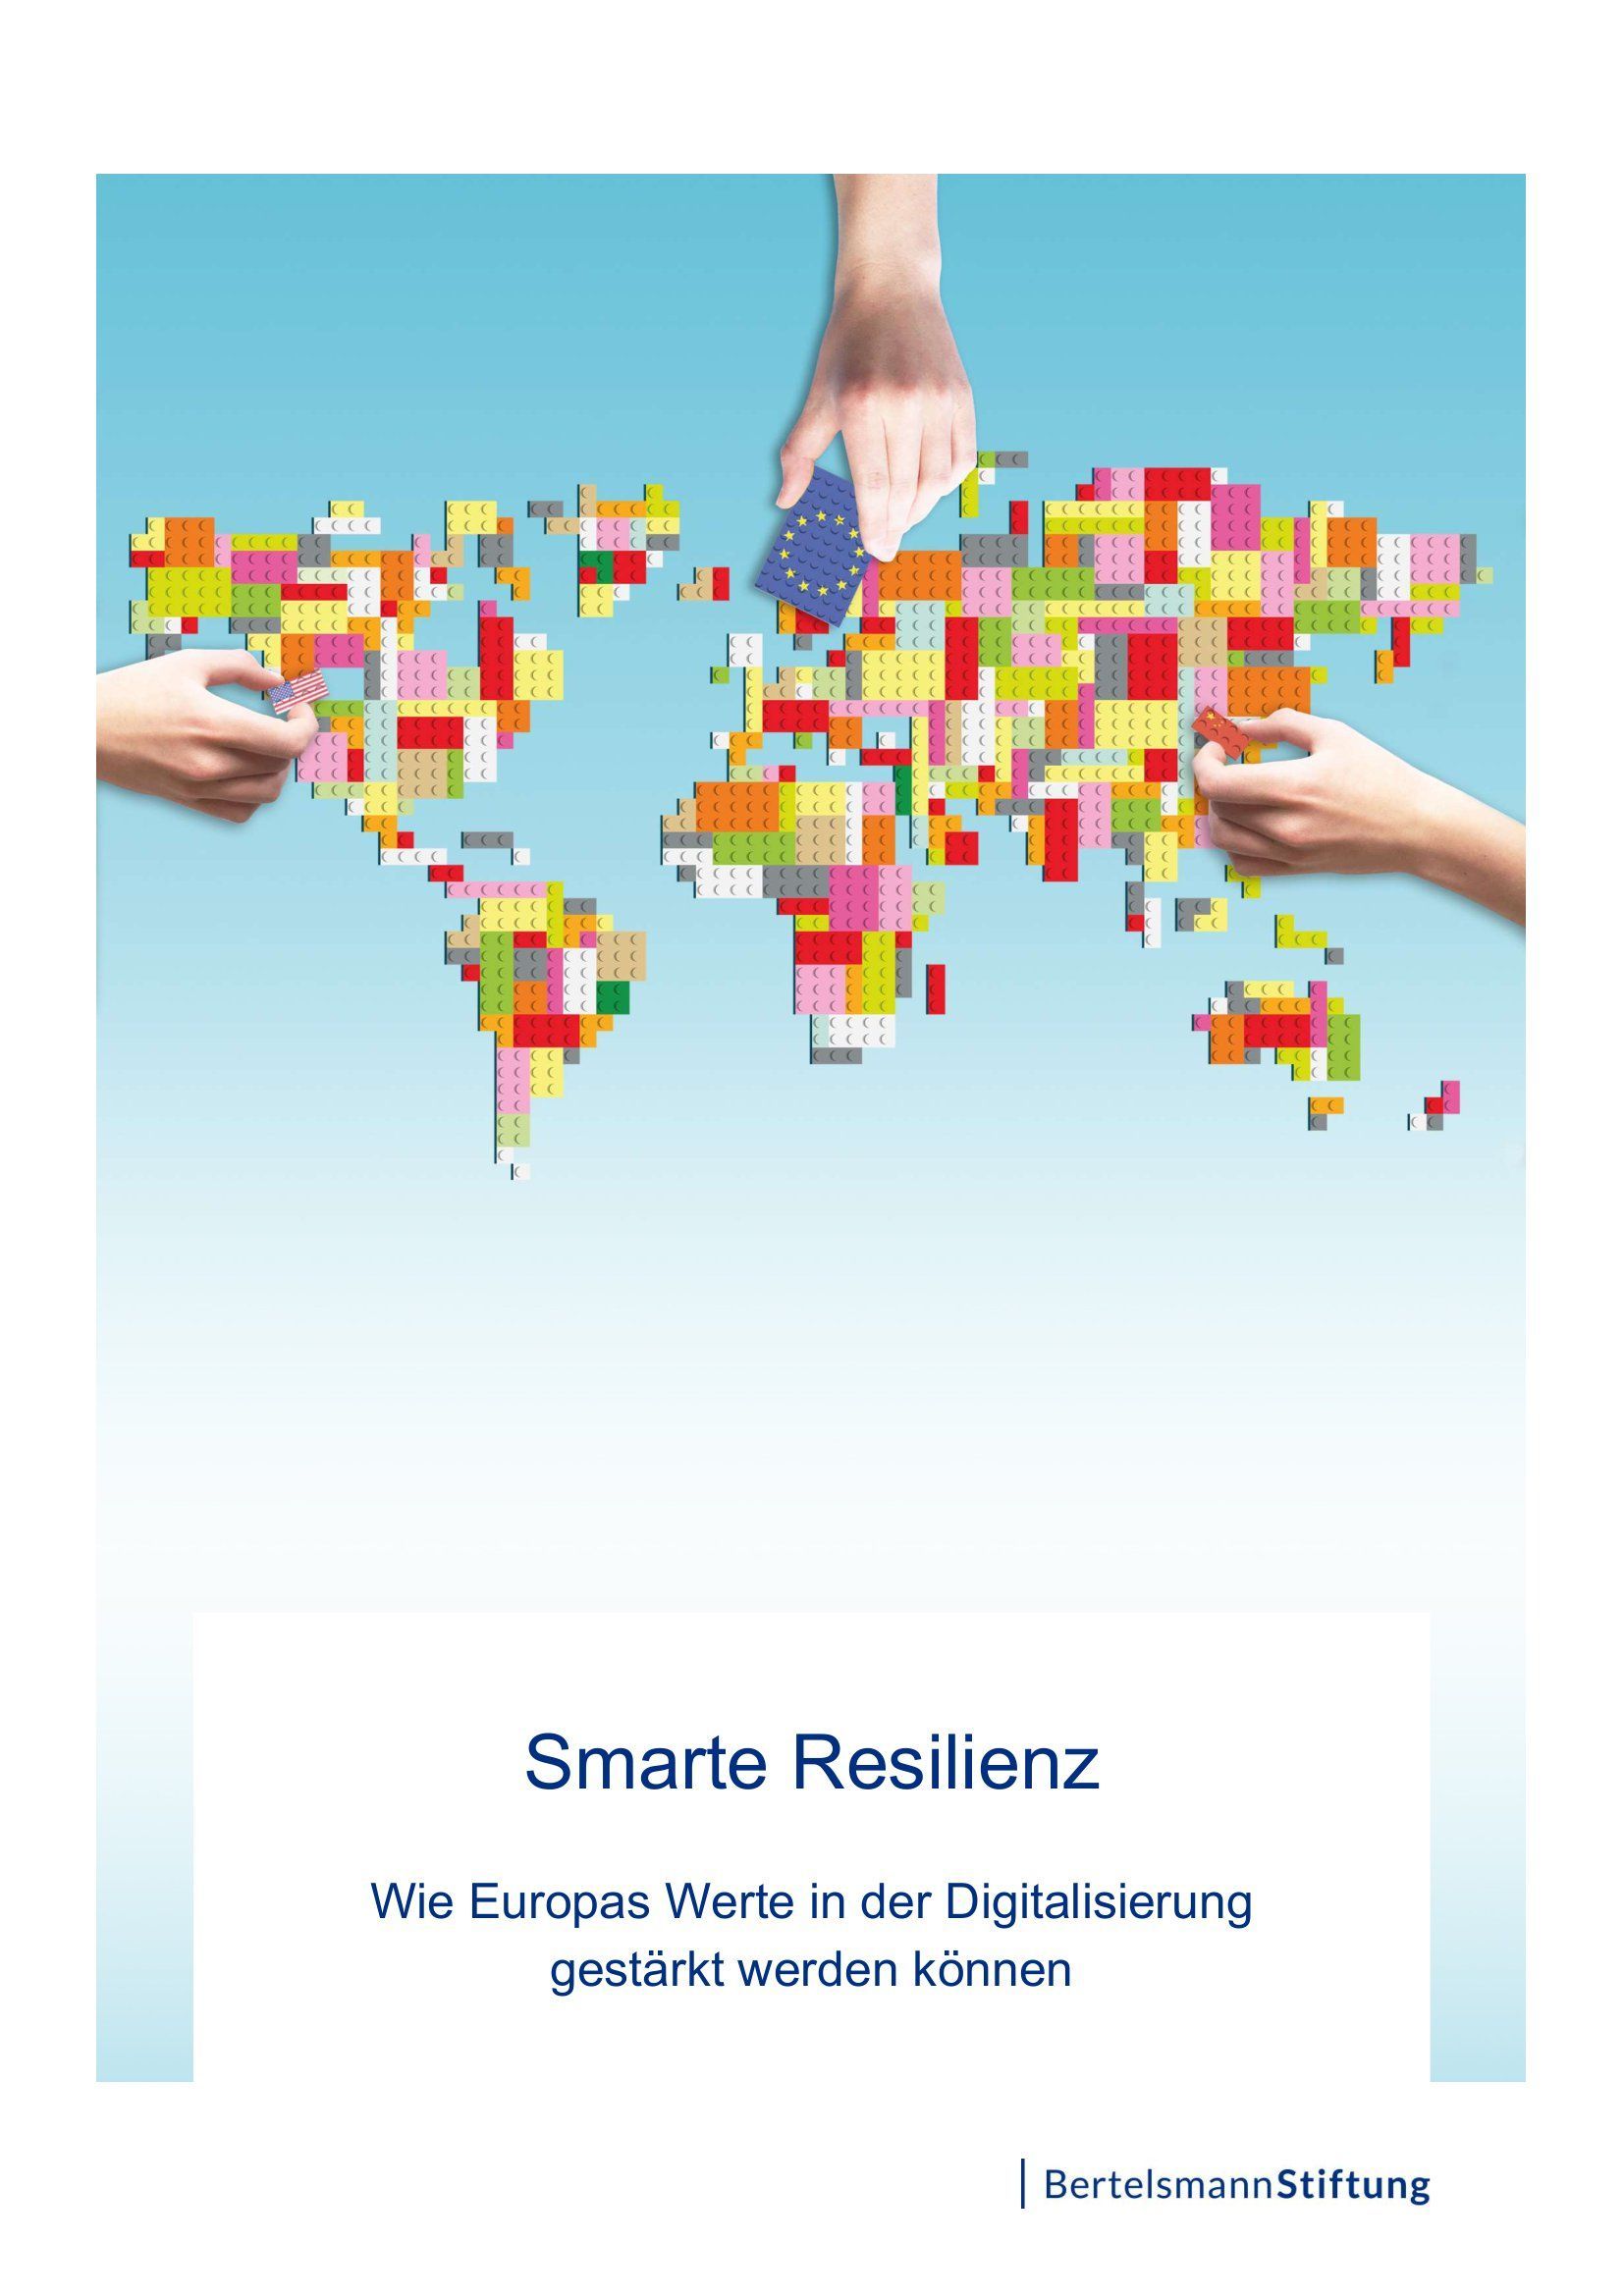 Smarte Resilienz - Wie Europas Werte in der Digitalisierung gestärkt werden können